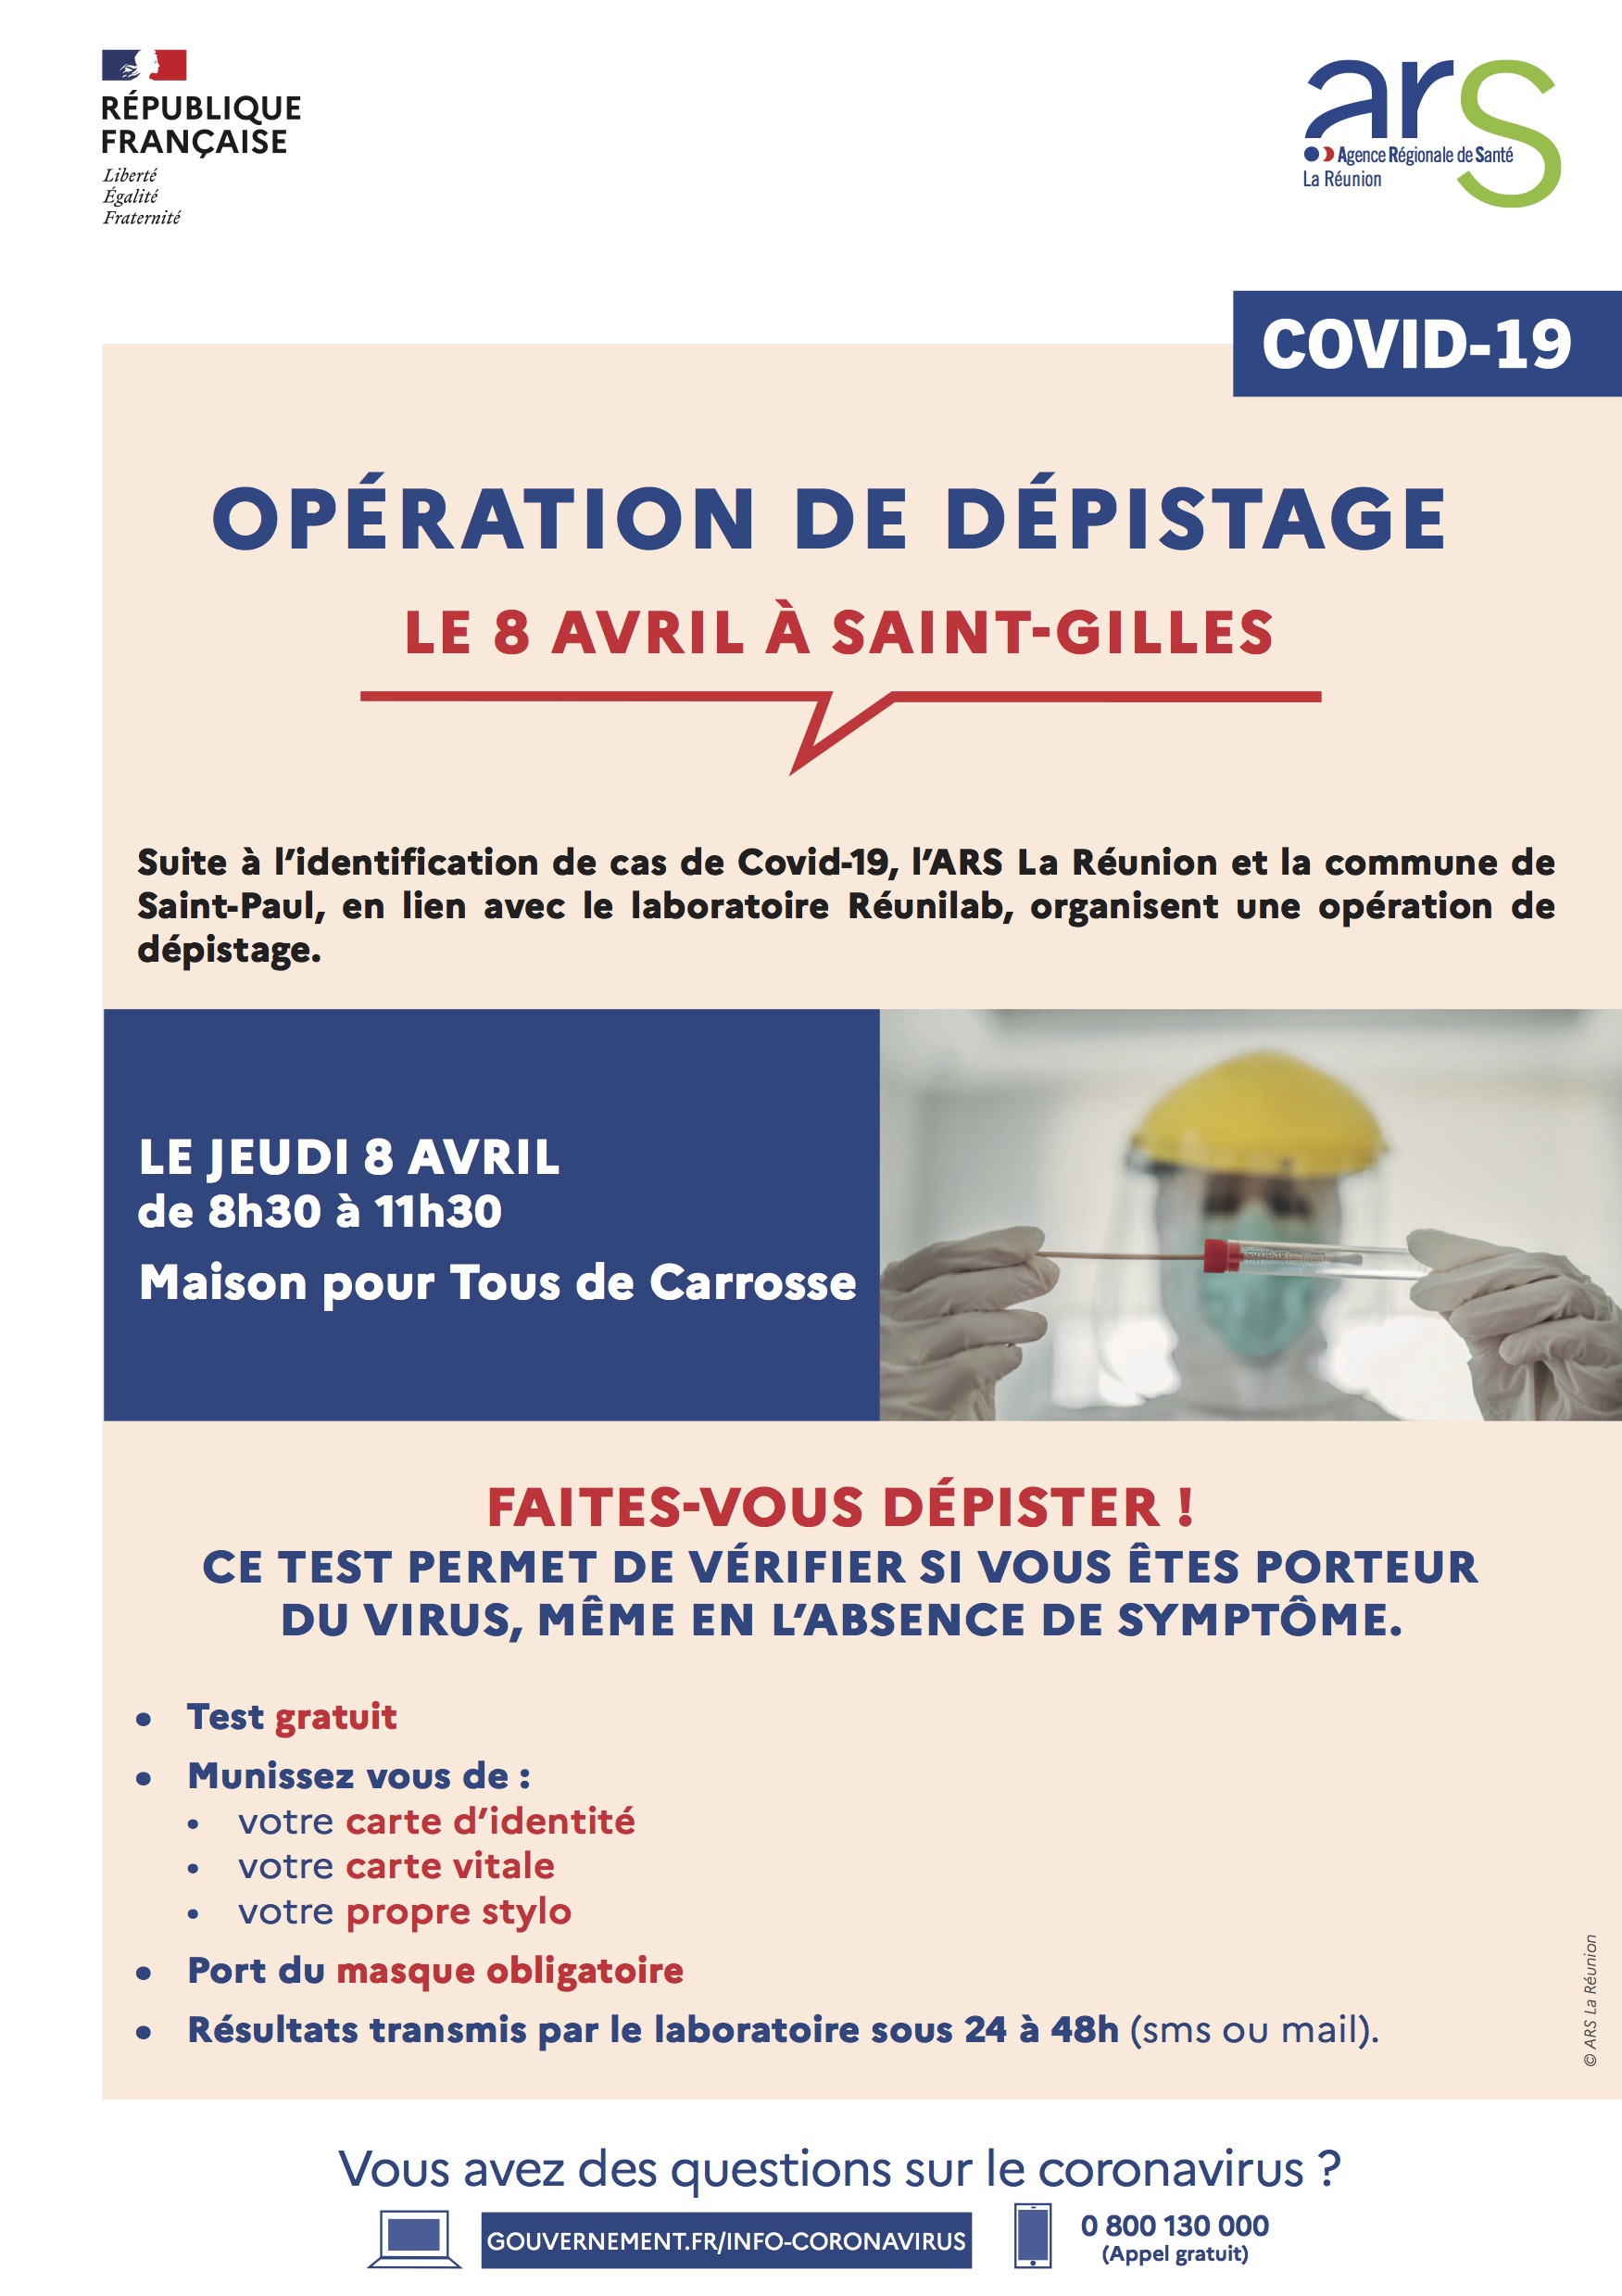 Covid-19 : Opération de dépistage ce jeudi 8 avril à la Maison Pour Tous de Carrosse